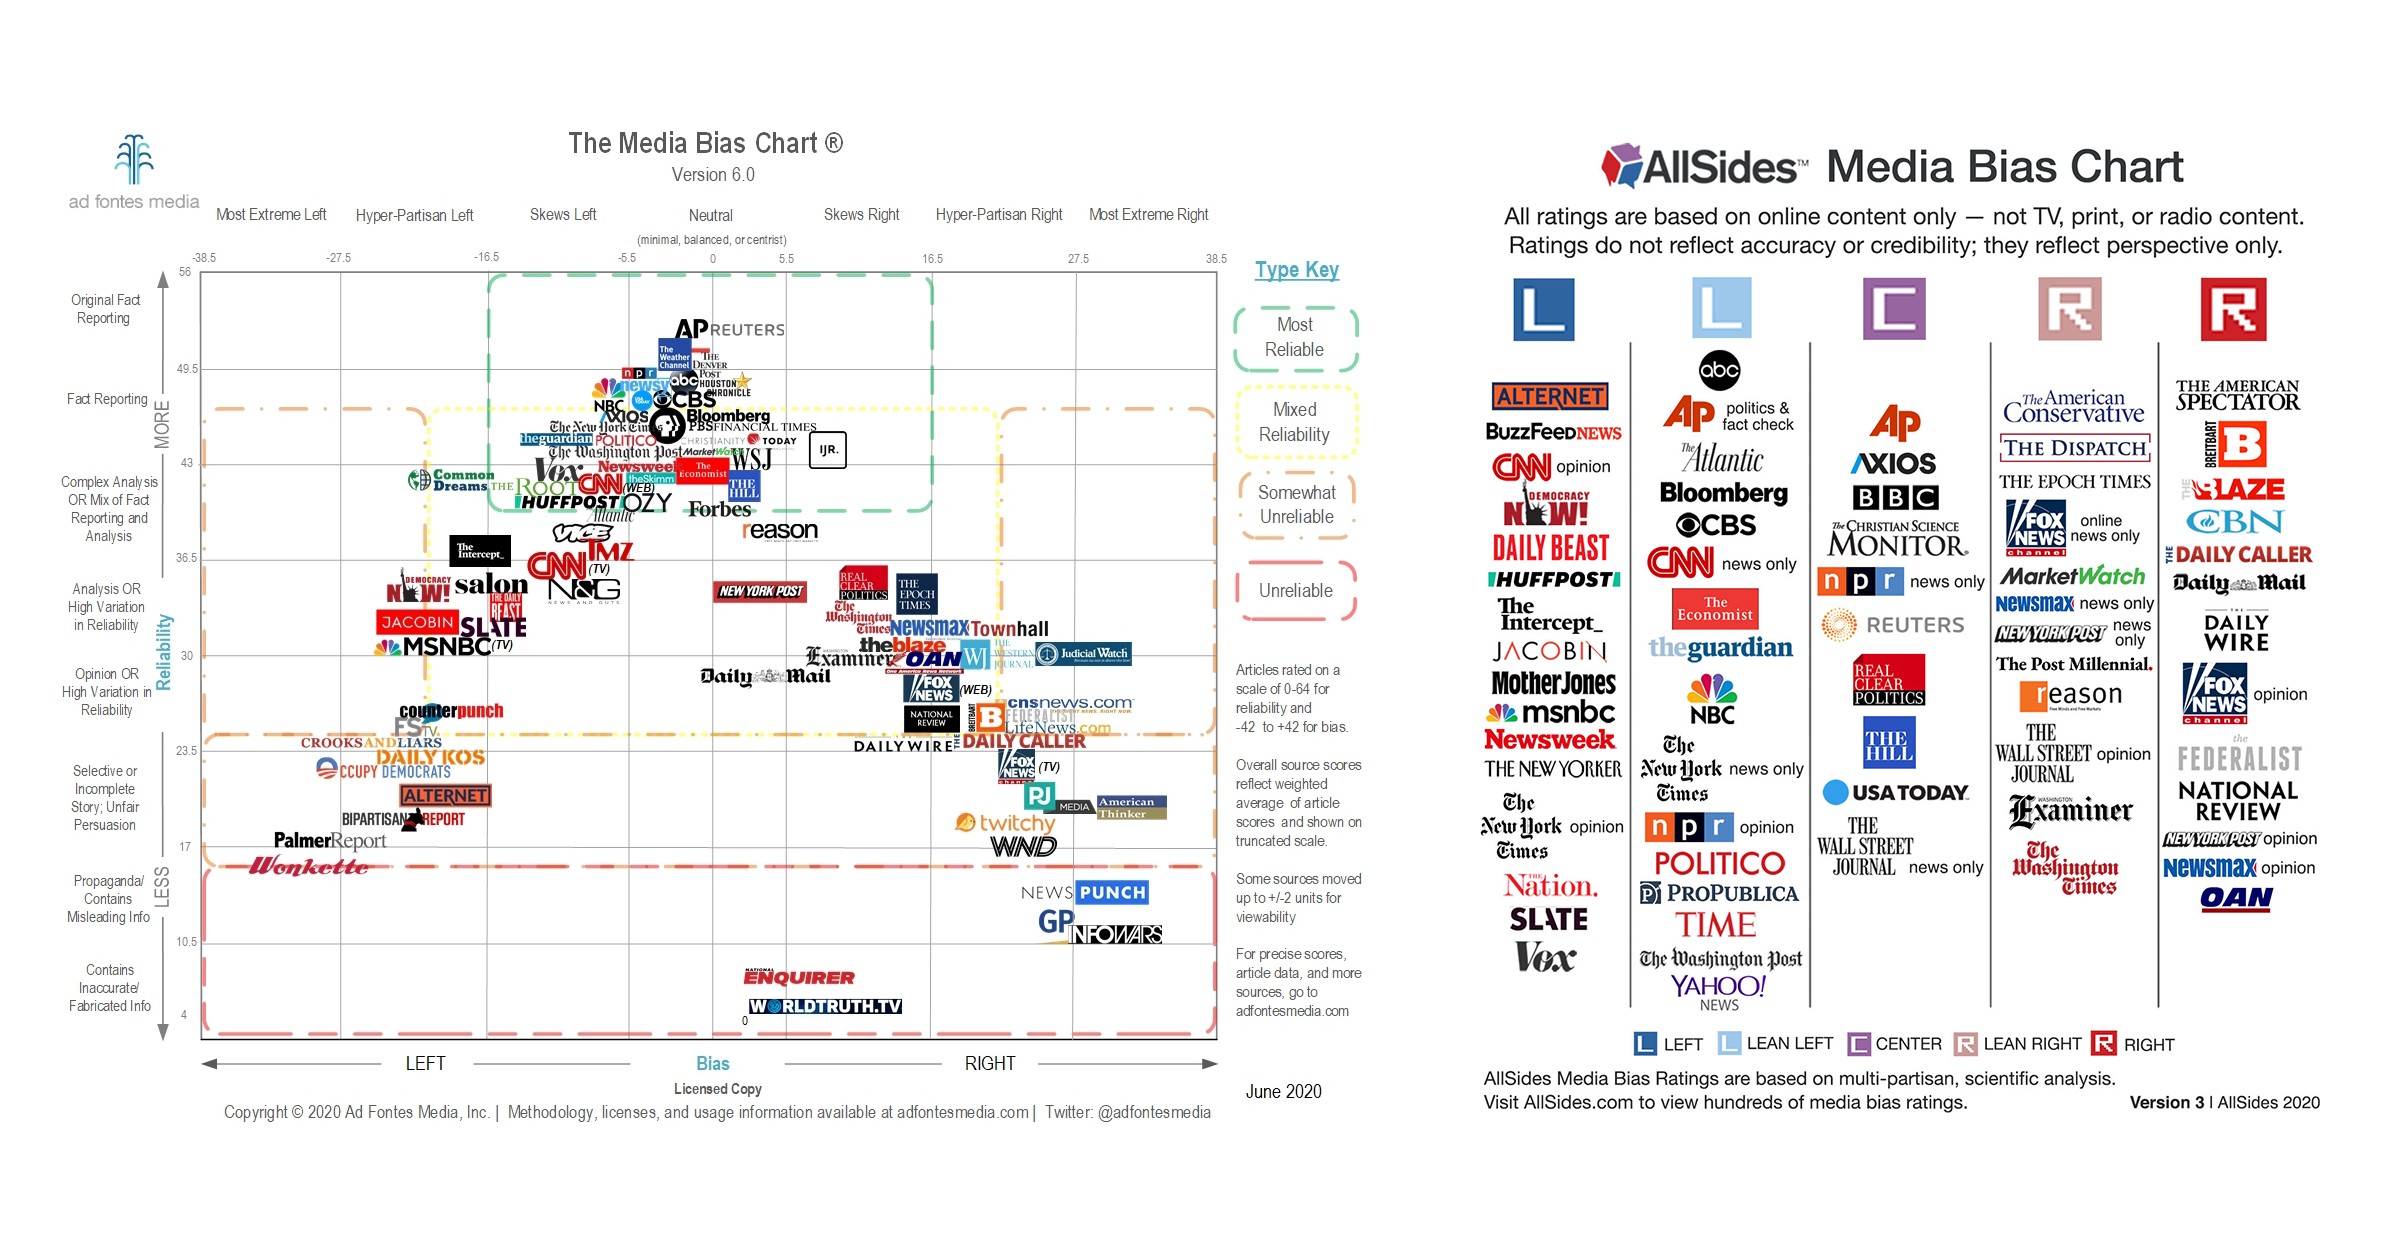 Should you trust media bias charts? - Poynter